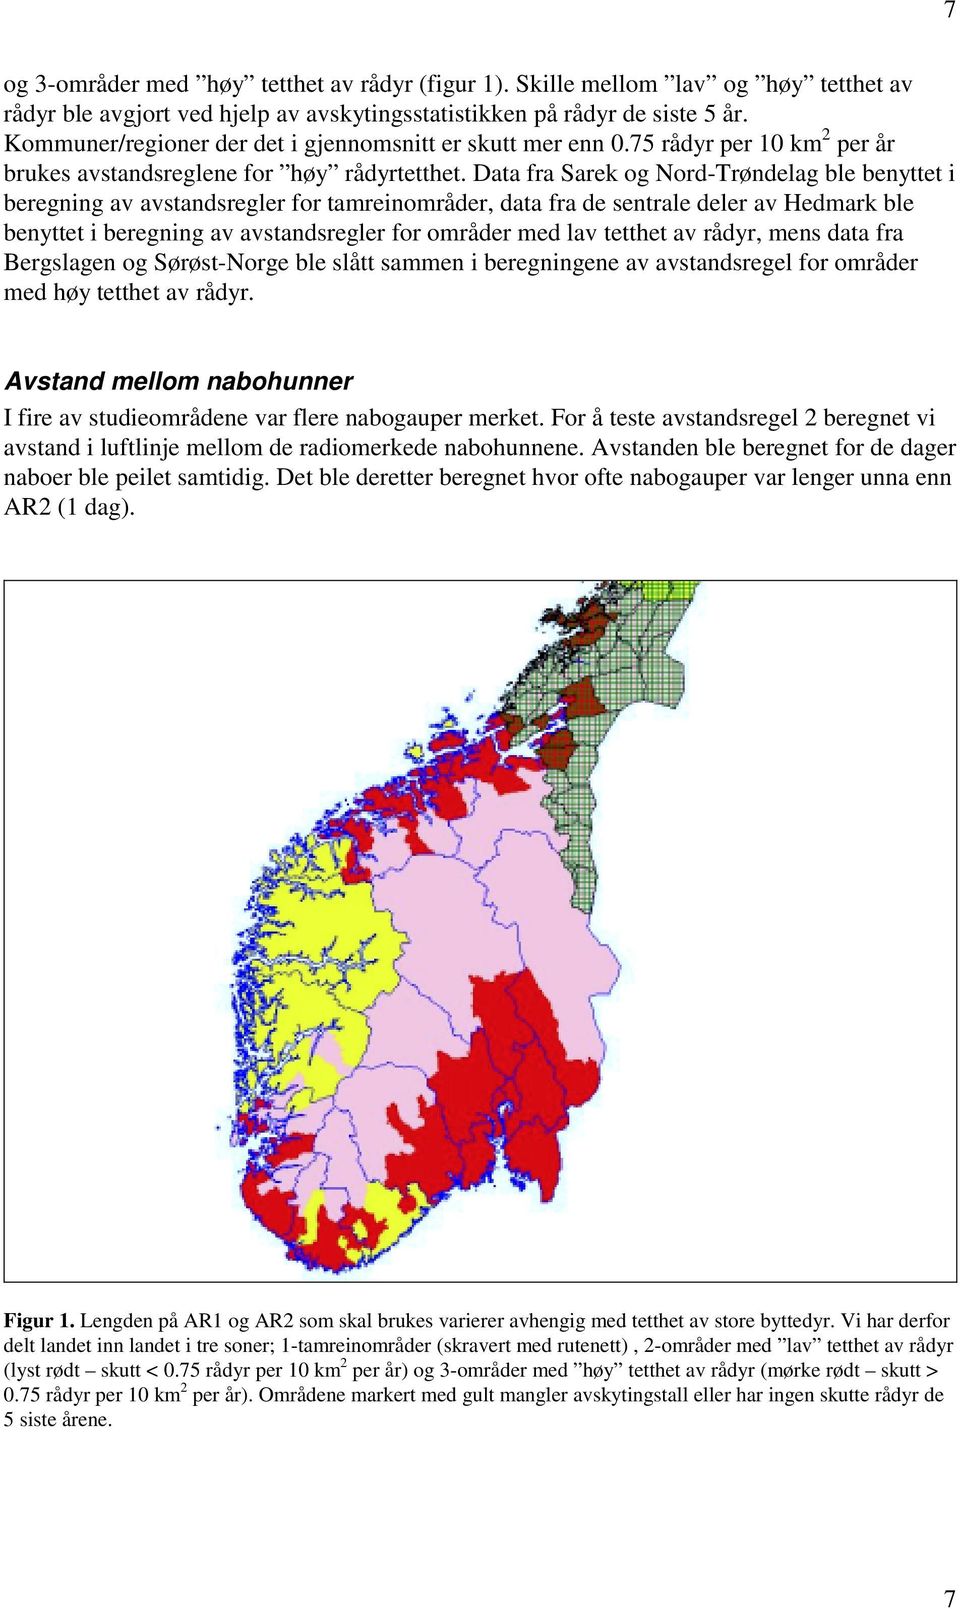 Data fra Sarek og Nord-Trøndelag ble benyttet i beregning av avstandsregler for tamreinområder, data fra de sentrale deler av Hedmark ble benyttet i beregning av avstandsregler for områder med lav